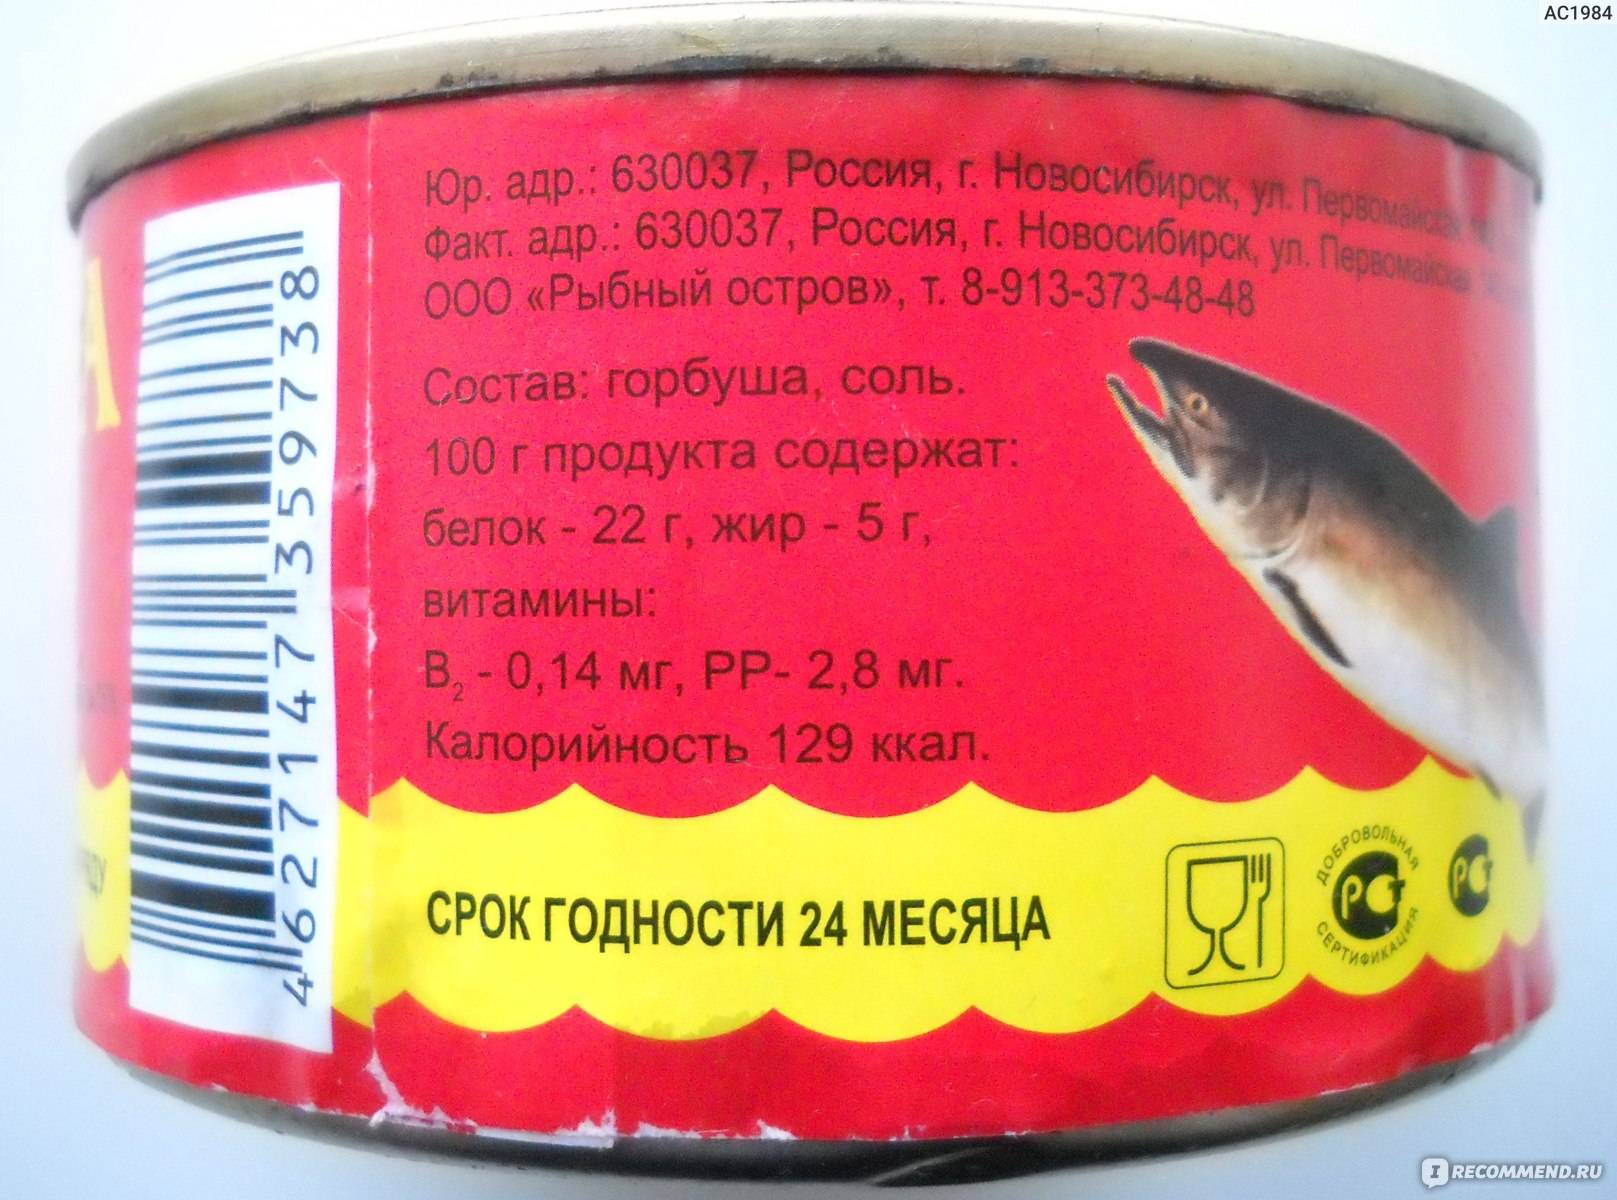 Горбуша: полезные, опасные и лечебные свойства горбуши. химический состав рыбы, калорийность, чем полезна, рецепты